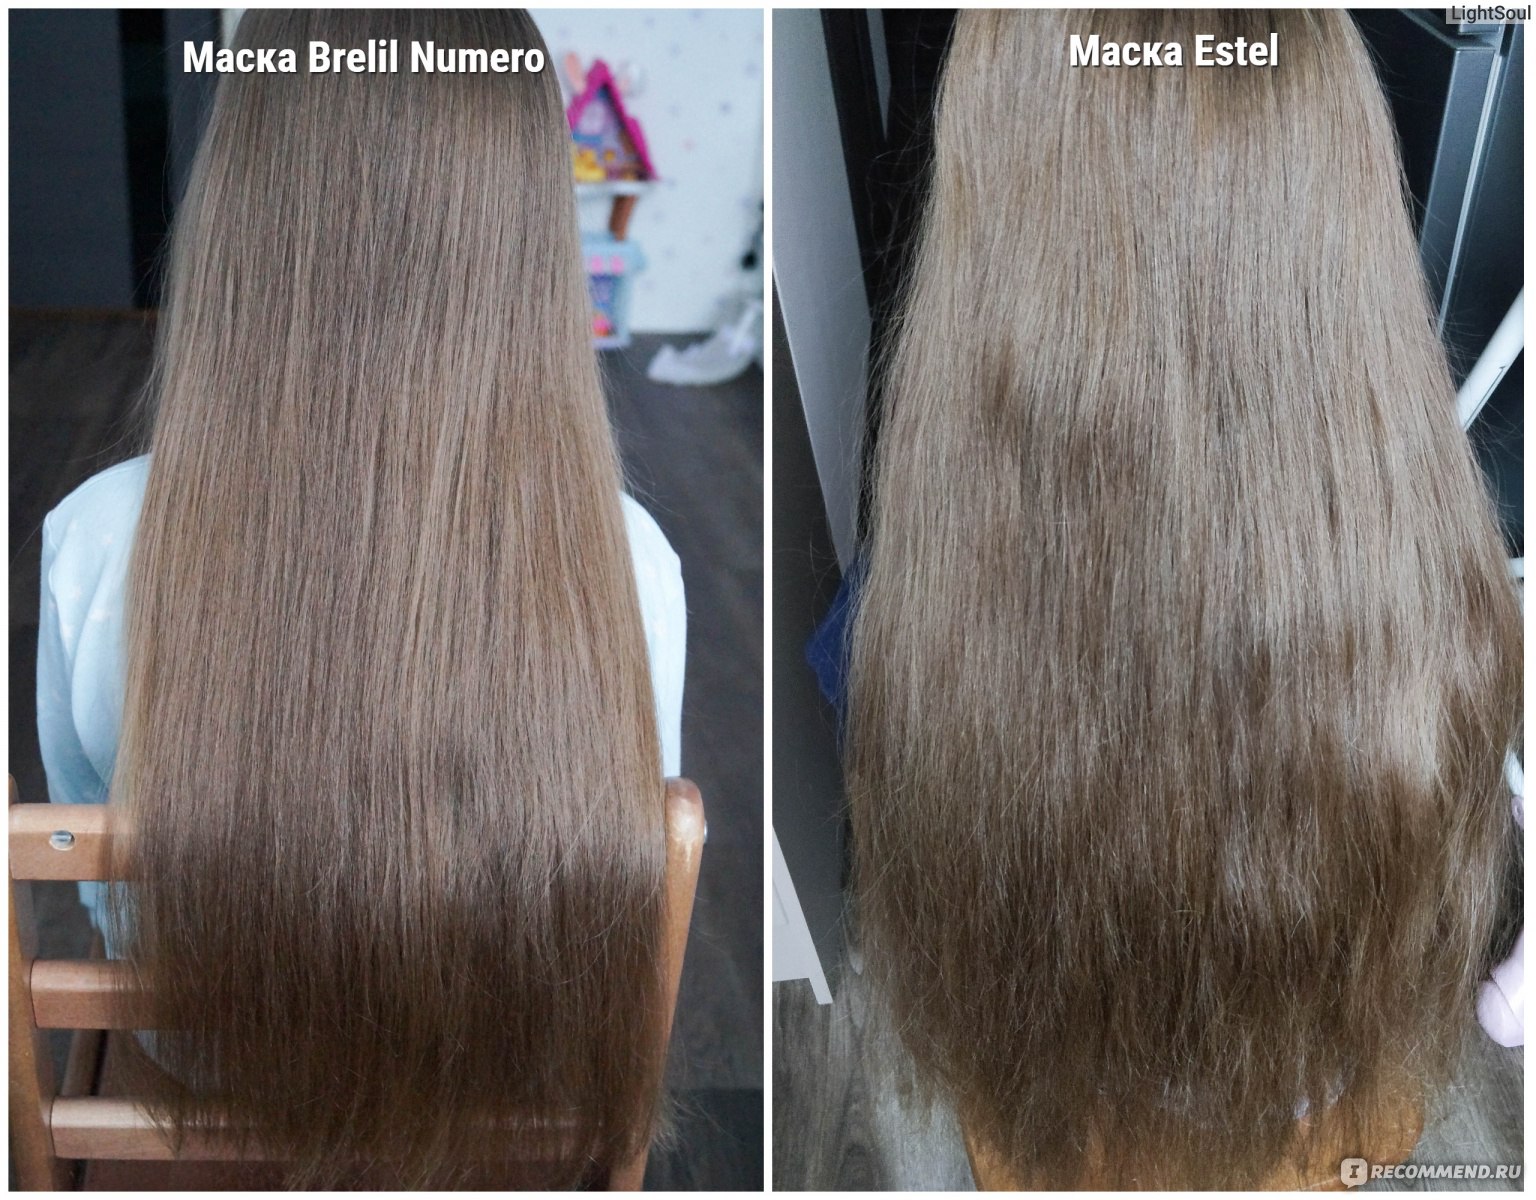 Маска для волос Estel Curex Vita терапия Восстановление и питание